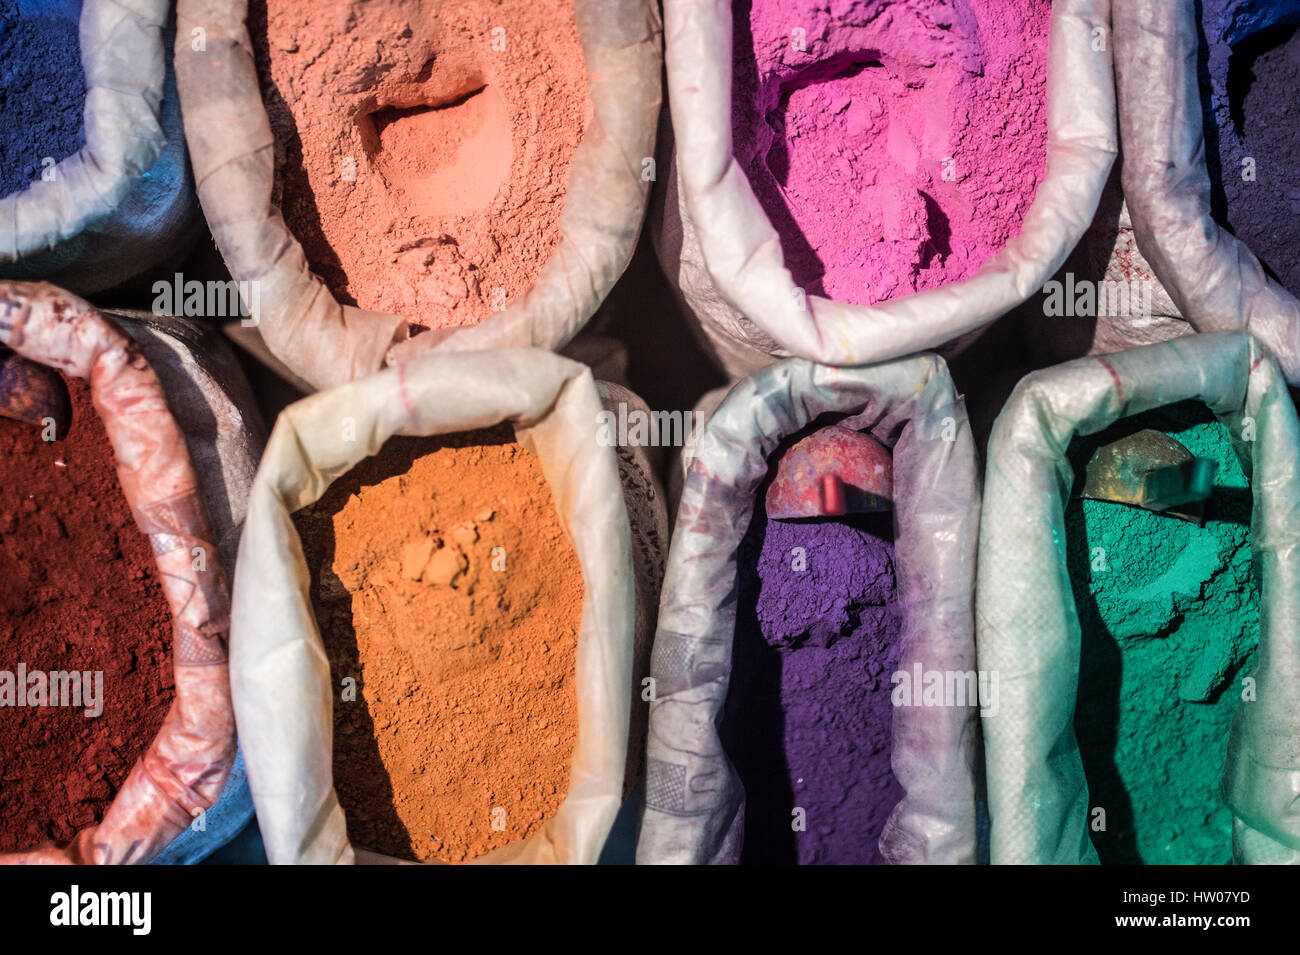 Le Maroc, Chechaouen. Les contenants des pigments colorés, des poudres ou des teintures sur la rue historique du village. Banque D'Images